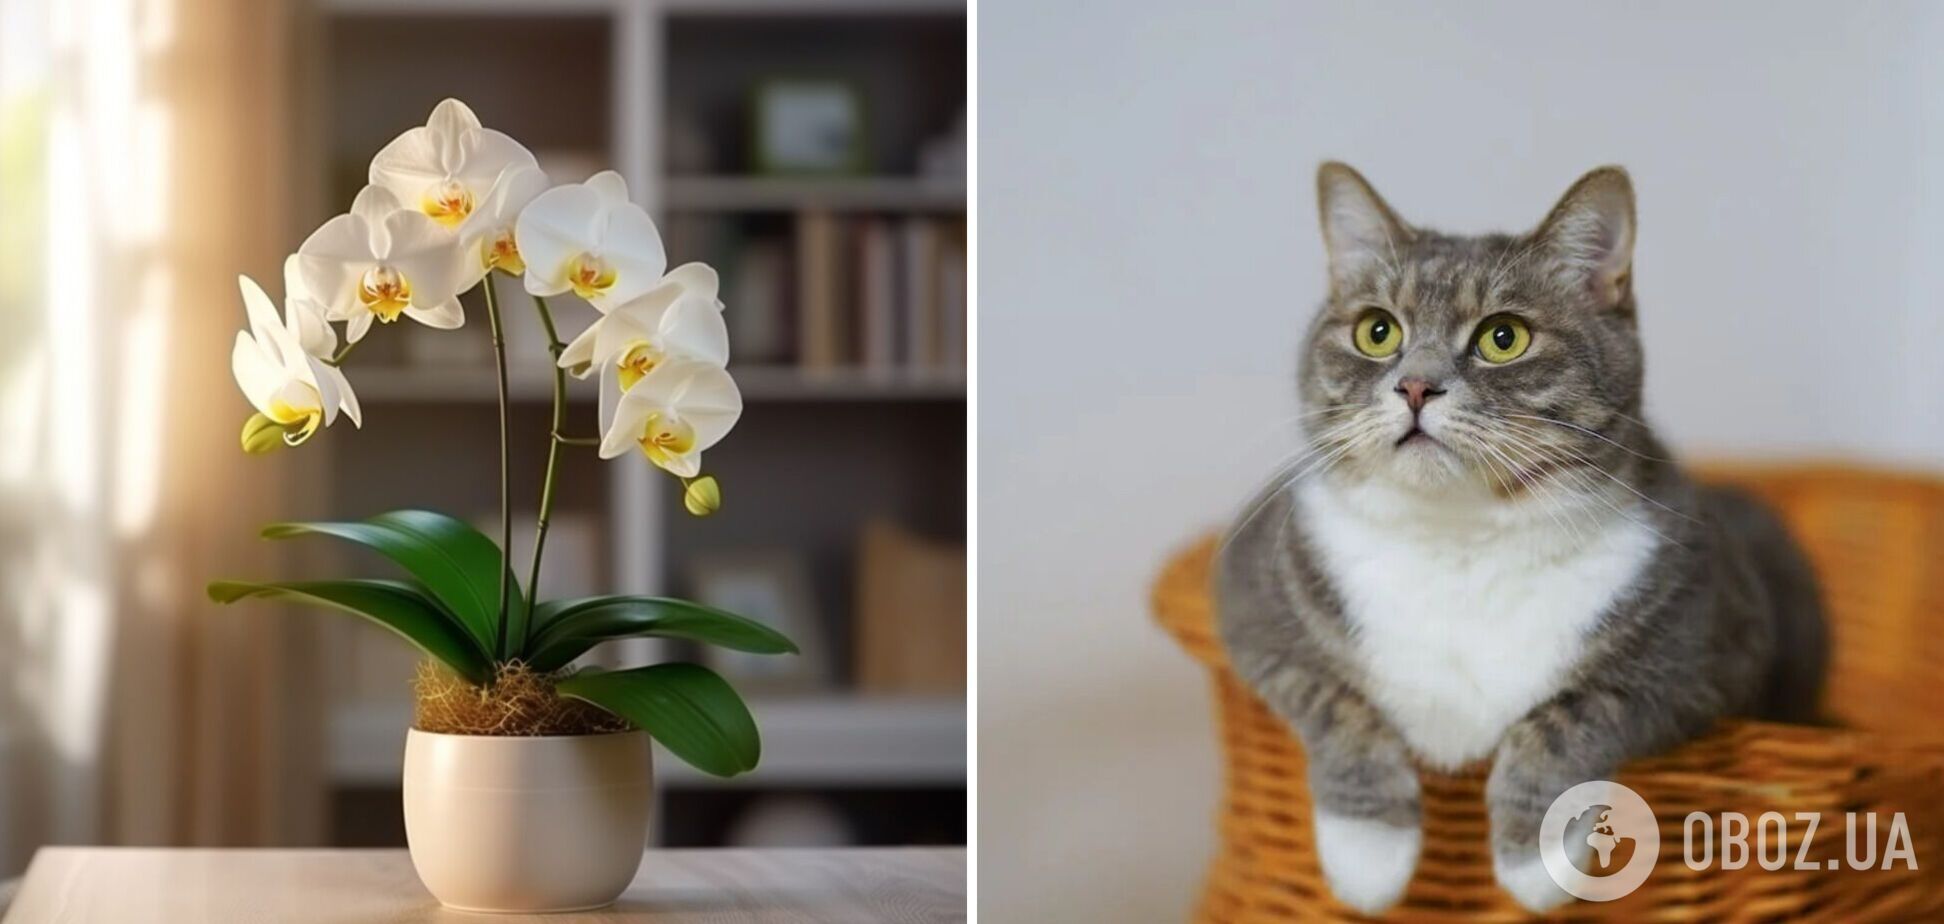 Как сделать, чтобы коты не лезли в комнатные цветы - лайфхаки